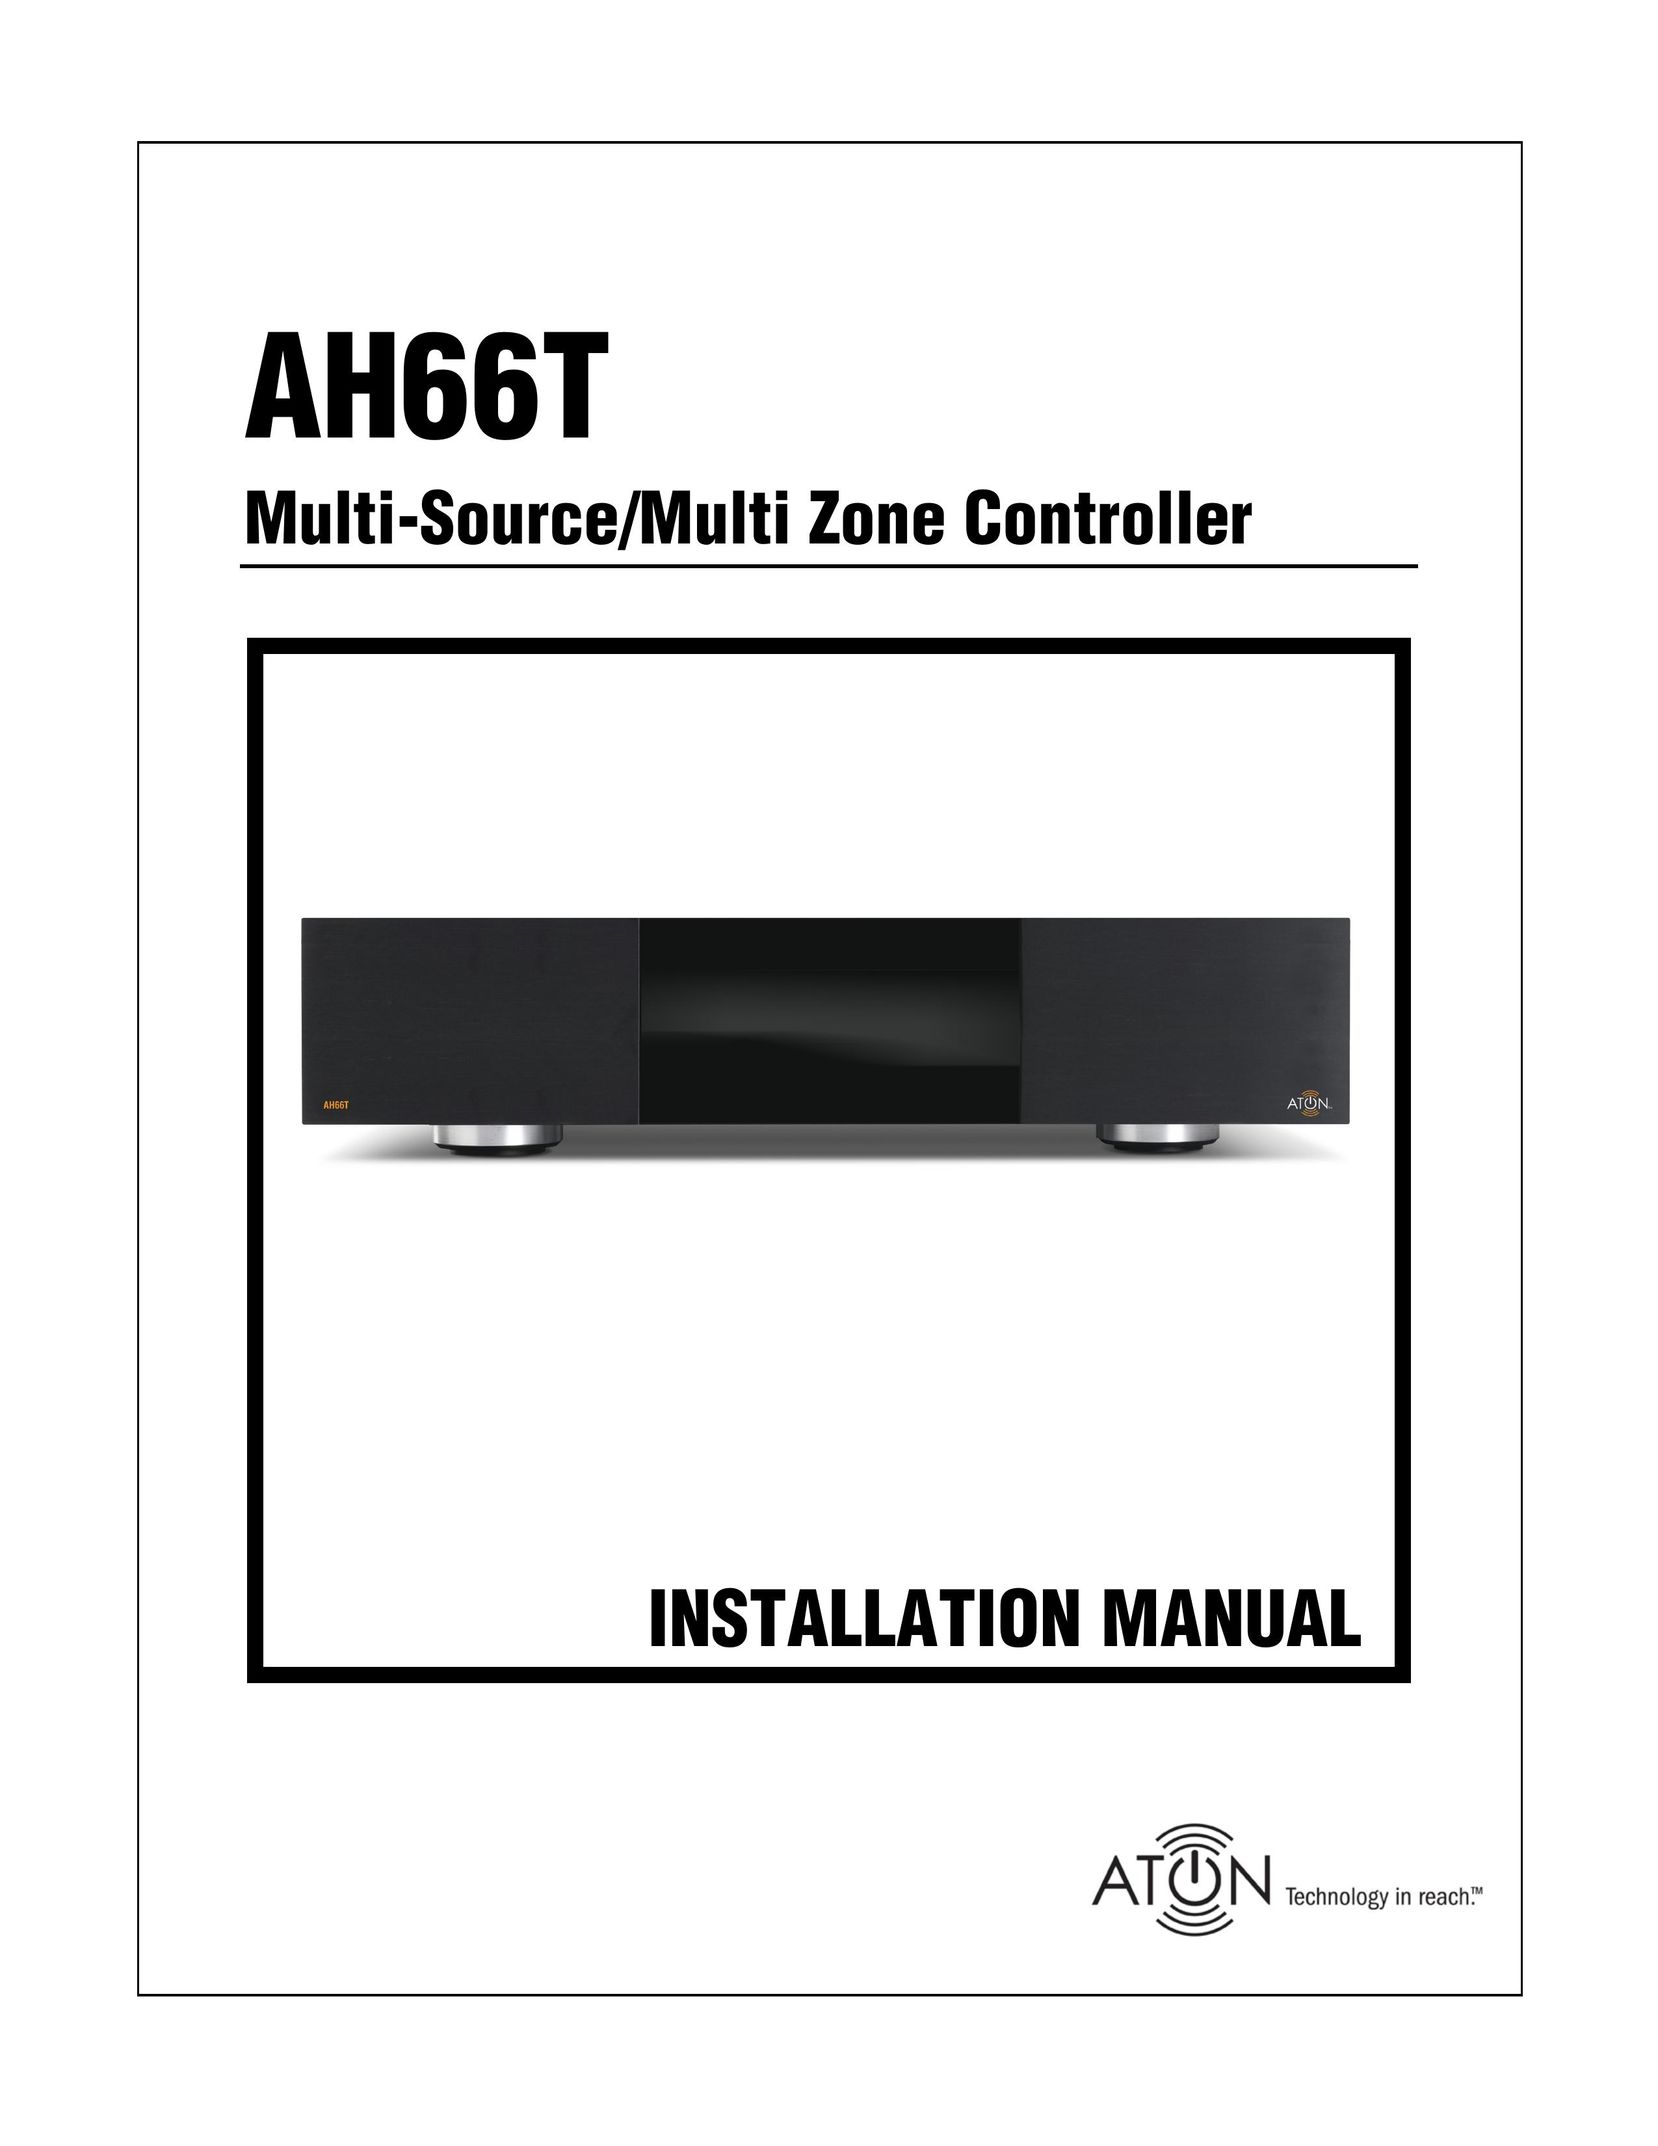 ATON AH66T Radio User Manual